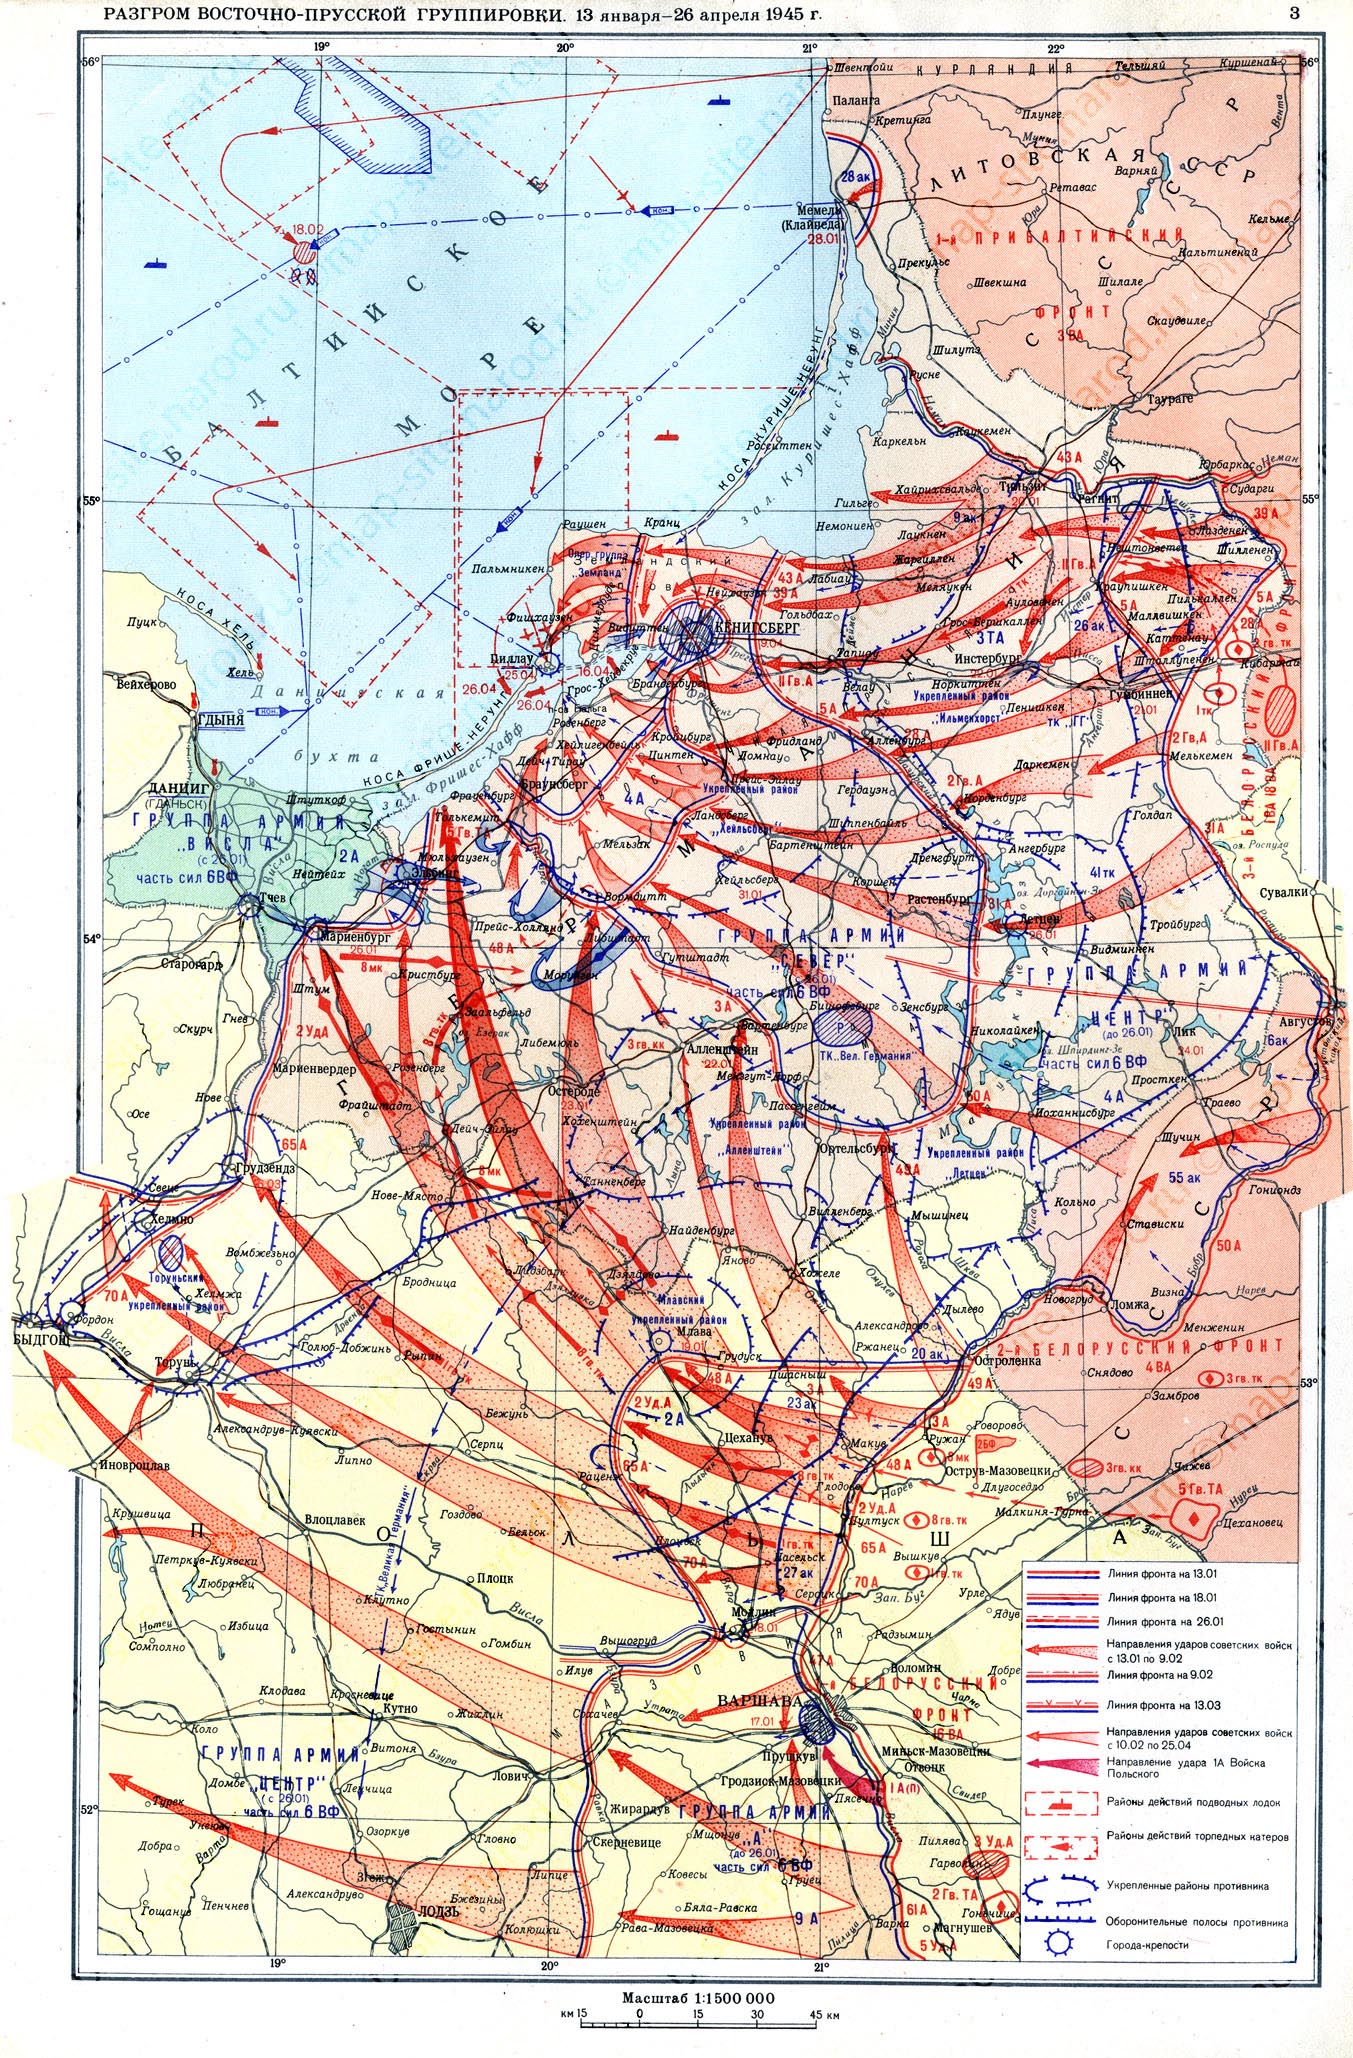 Битва за Східну Пруссію у 1945 році, частина 2